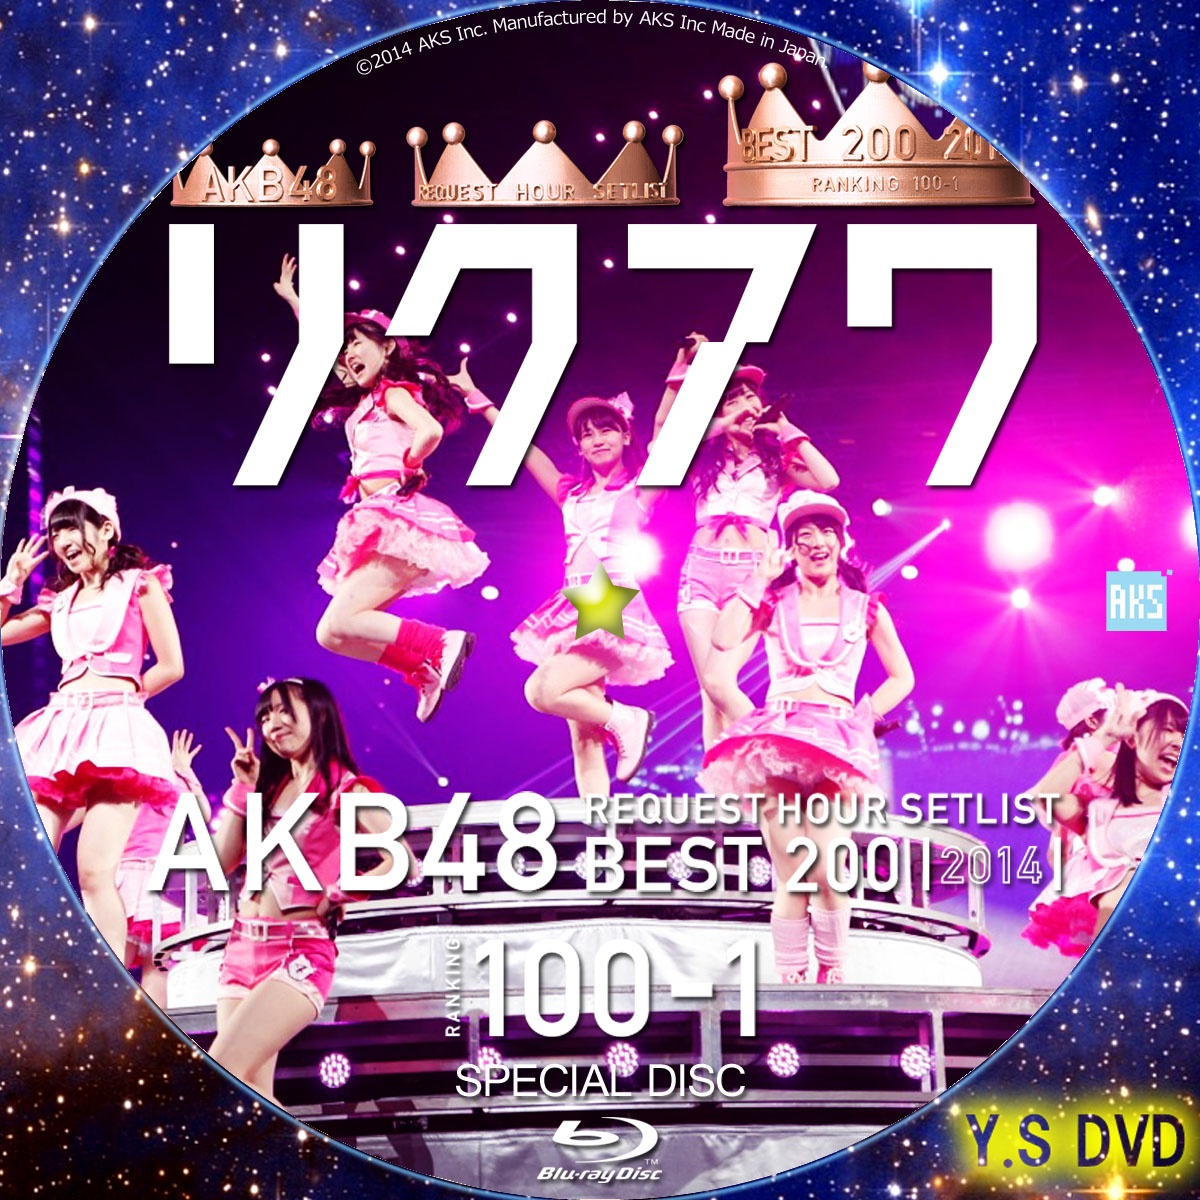 AKB48 リクエストアワーセットリストベスト200 2014 (100~1ver.) | Y.SオリジナルDVDラベル